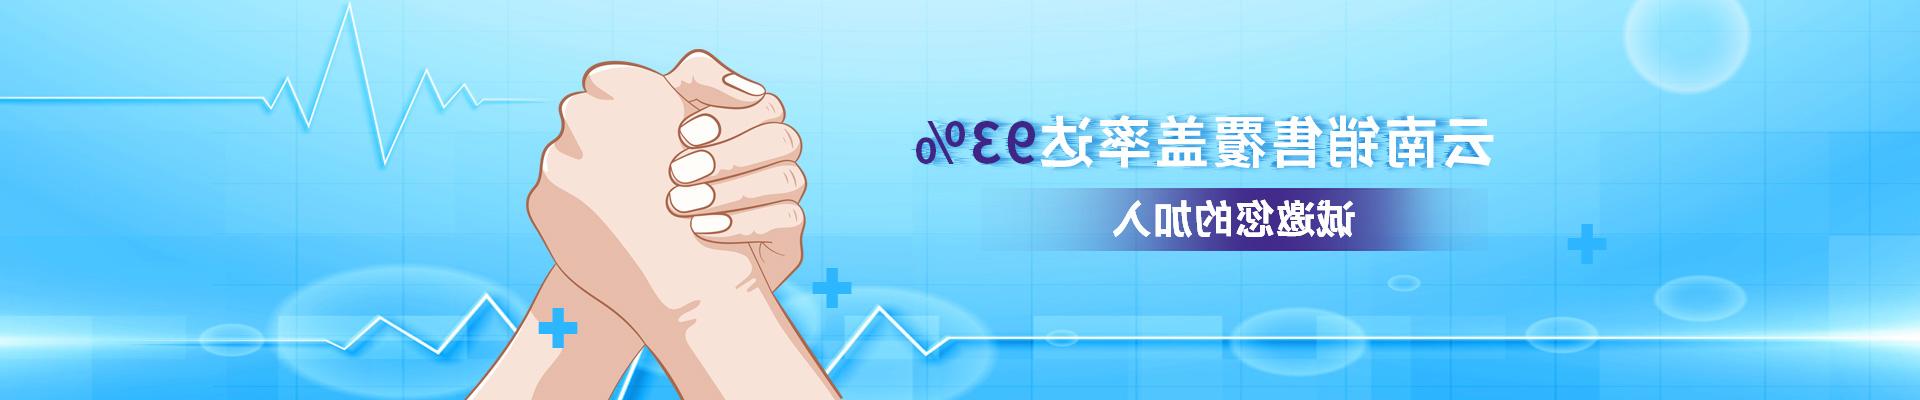 澳门电子城官方网站,云南销售覆盖率达93%,诚邀您的加入